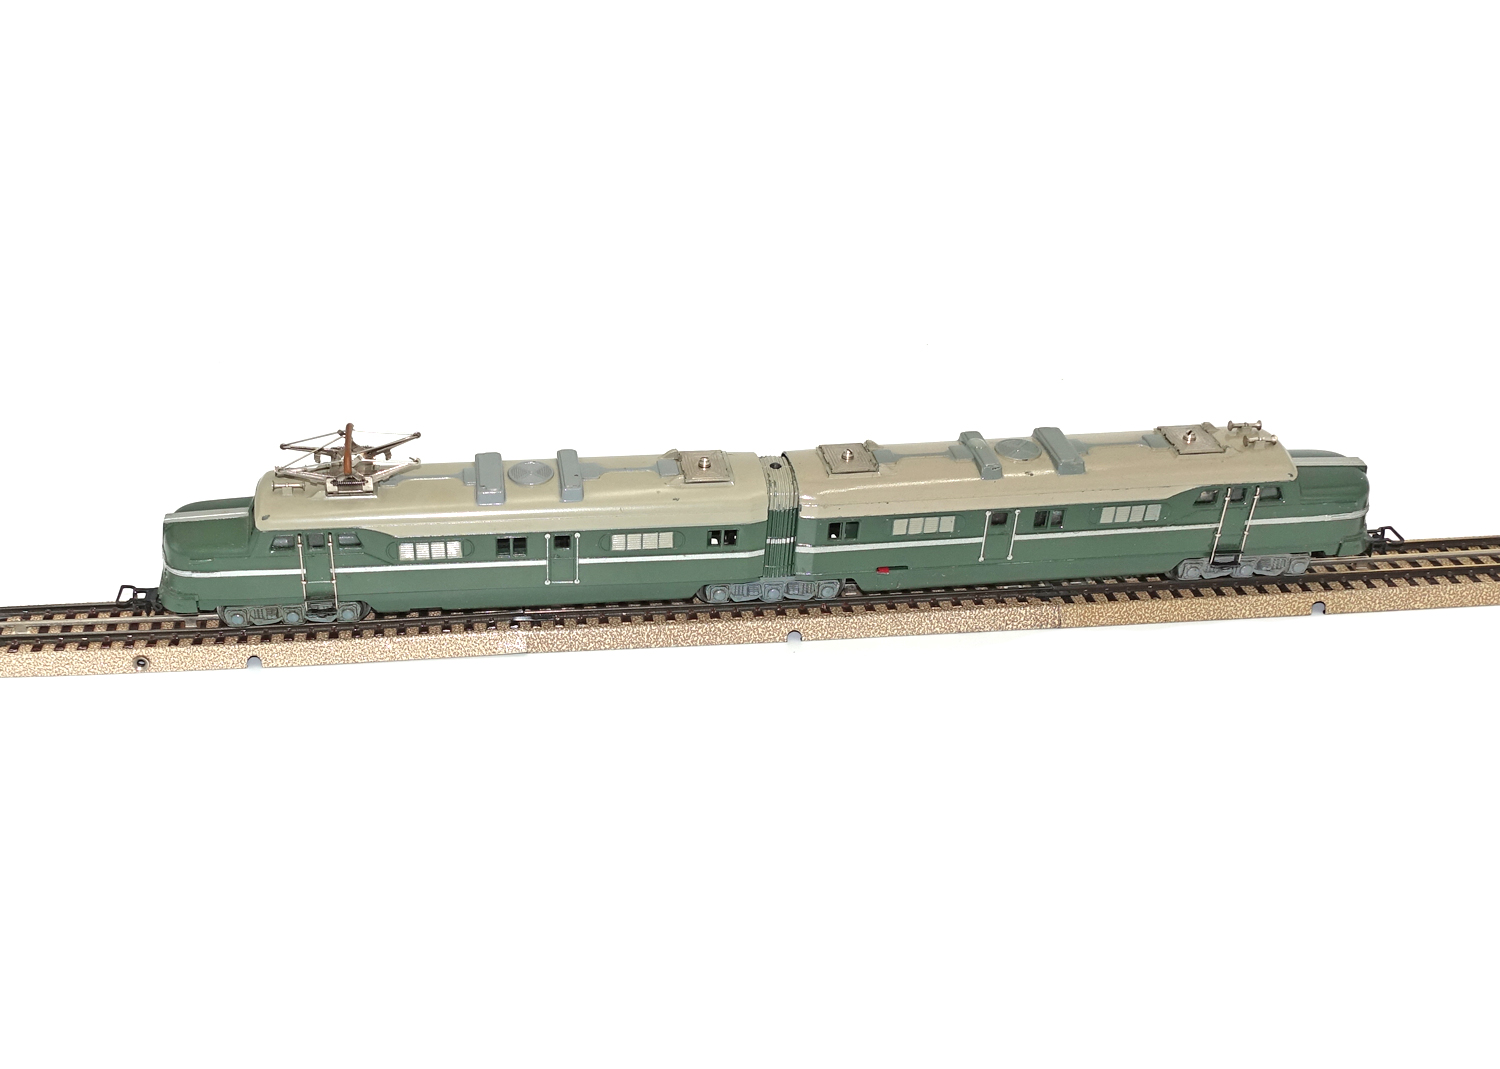  Märklin DL 800 Doppellokomotive olivgrün 